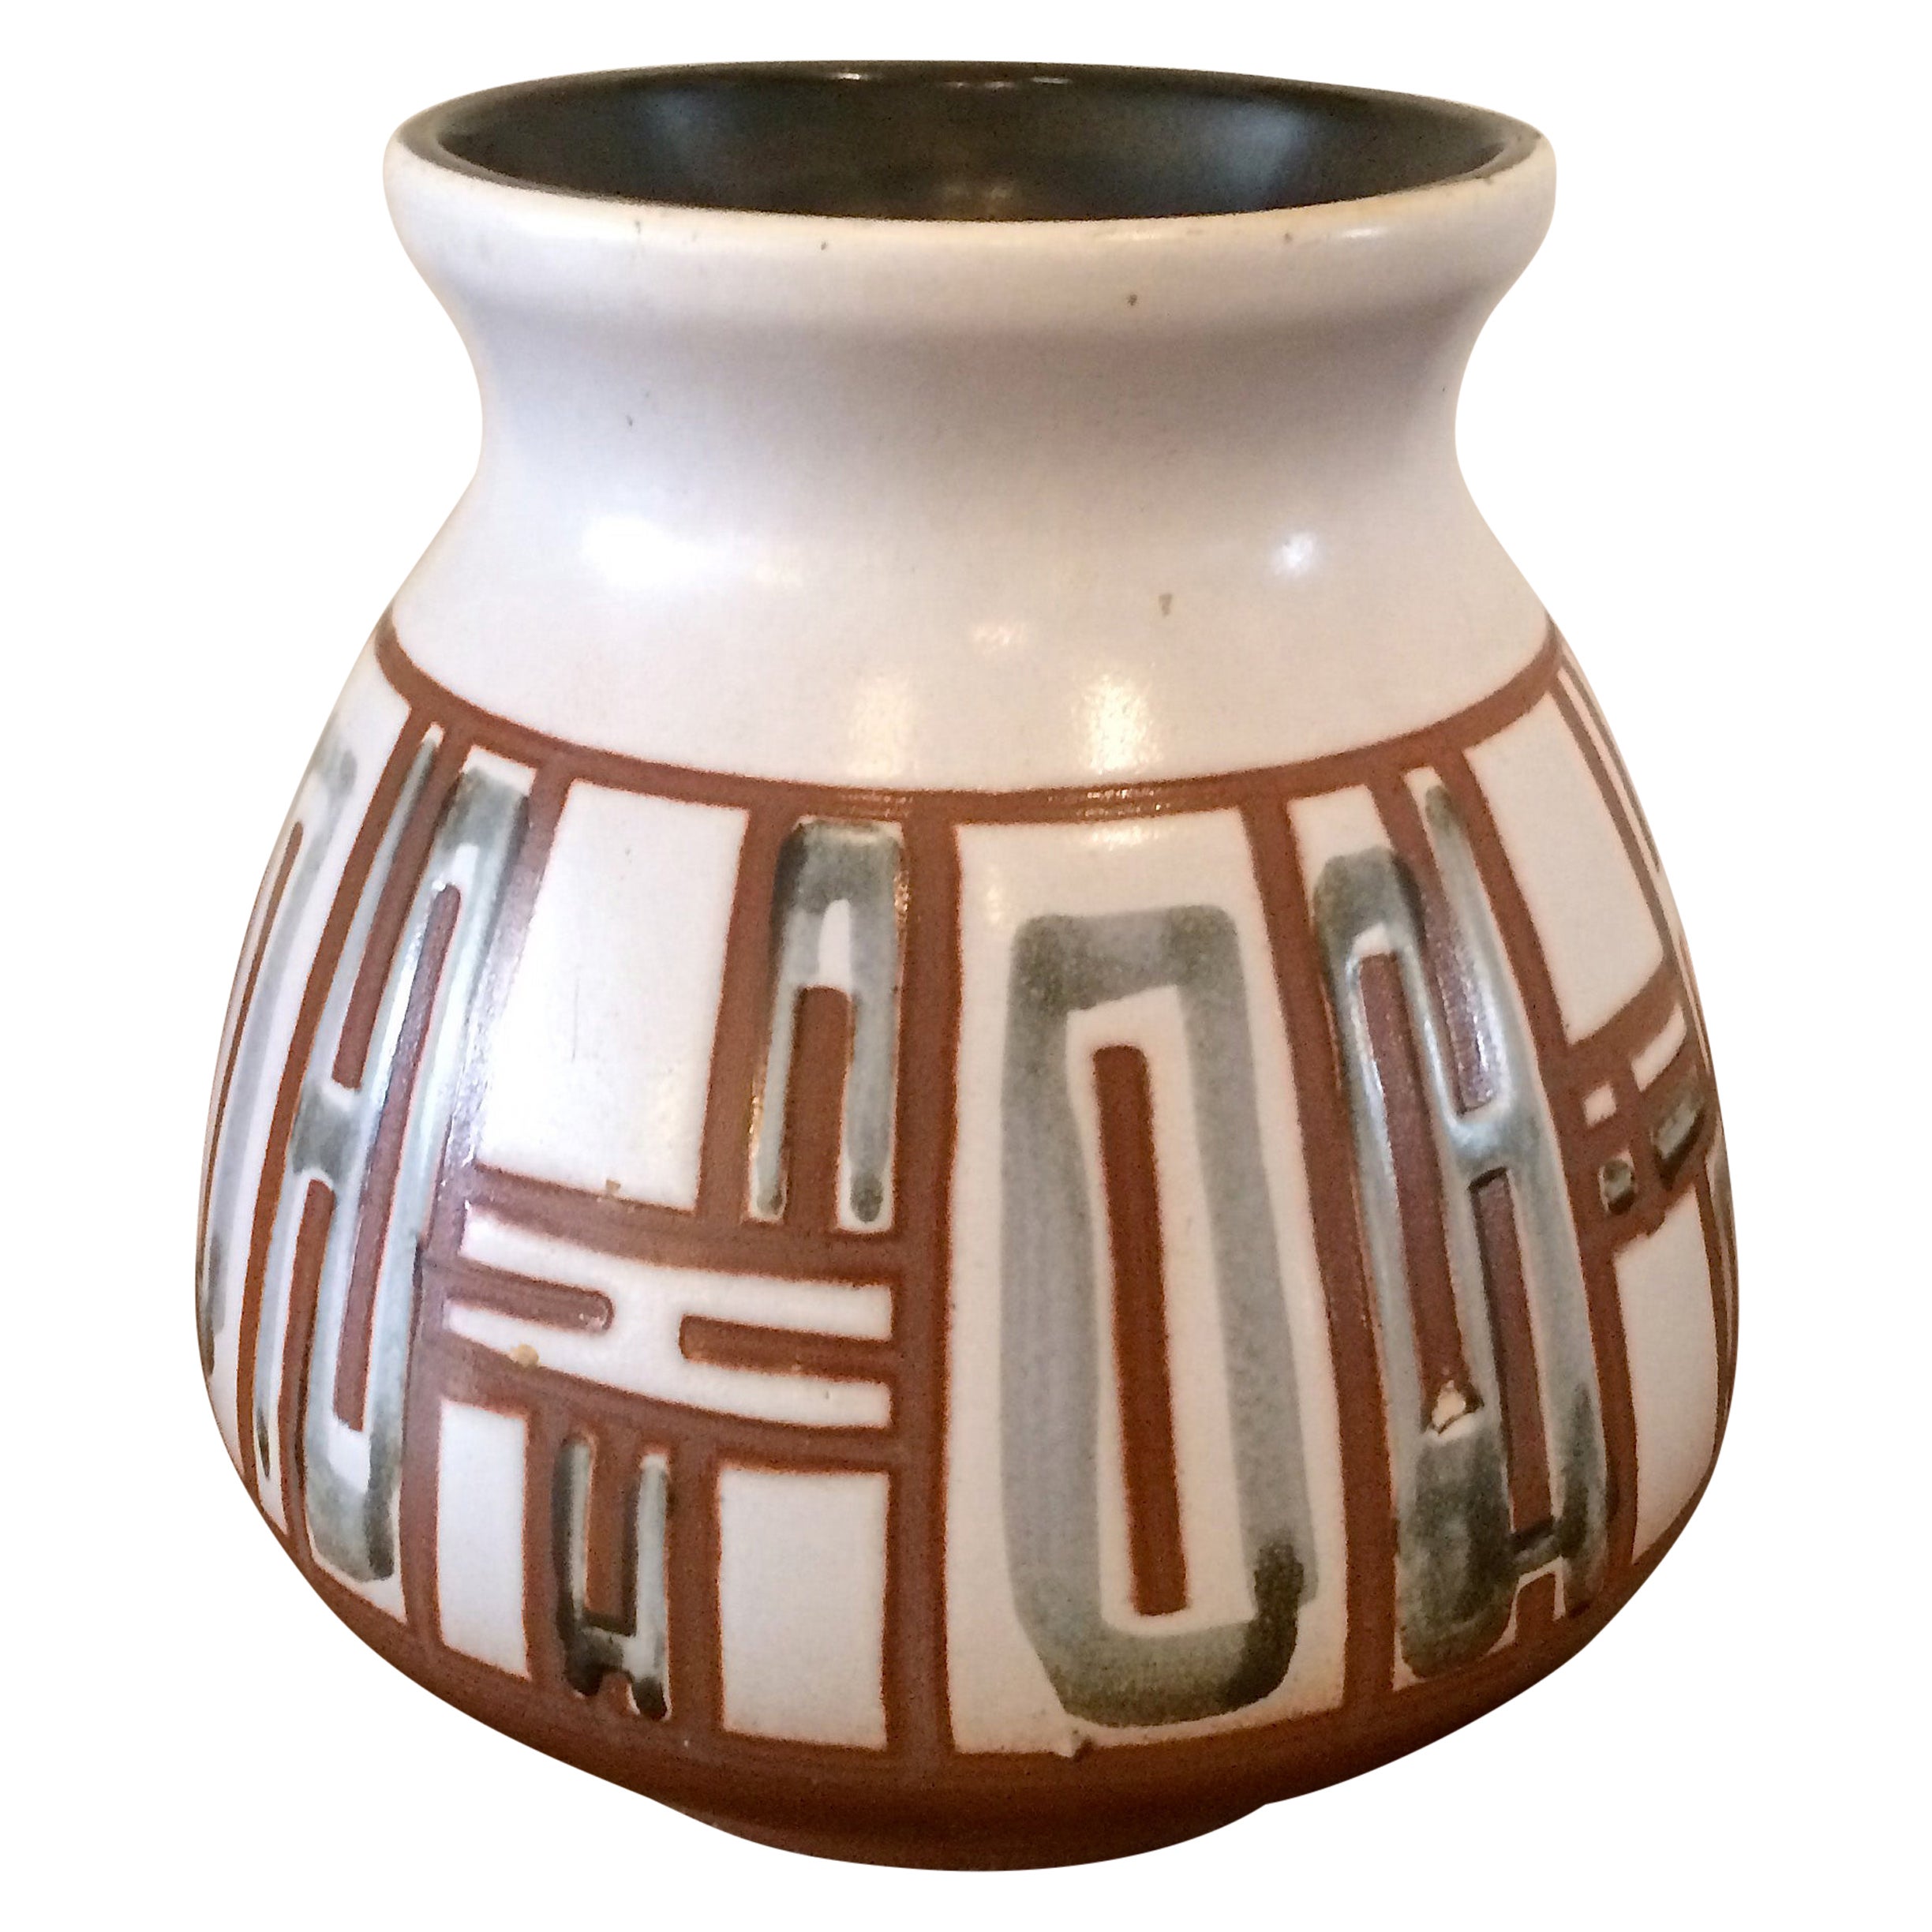 Vintage Vase BeigeBrown Ceramic 50s Retro Mid Century Danish Design